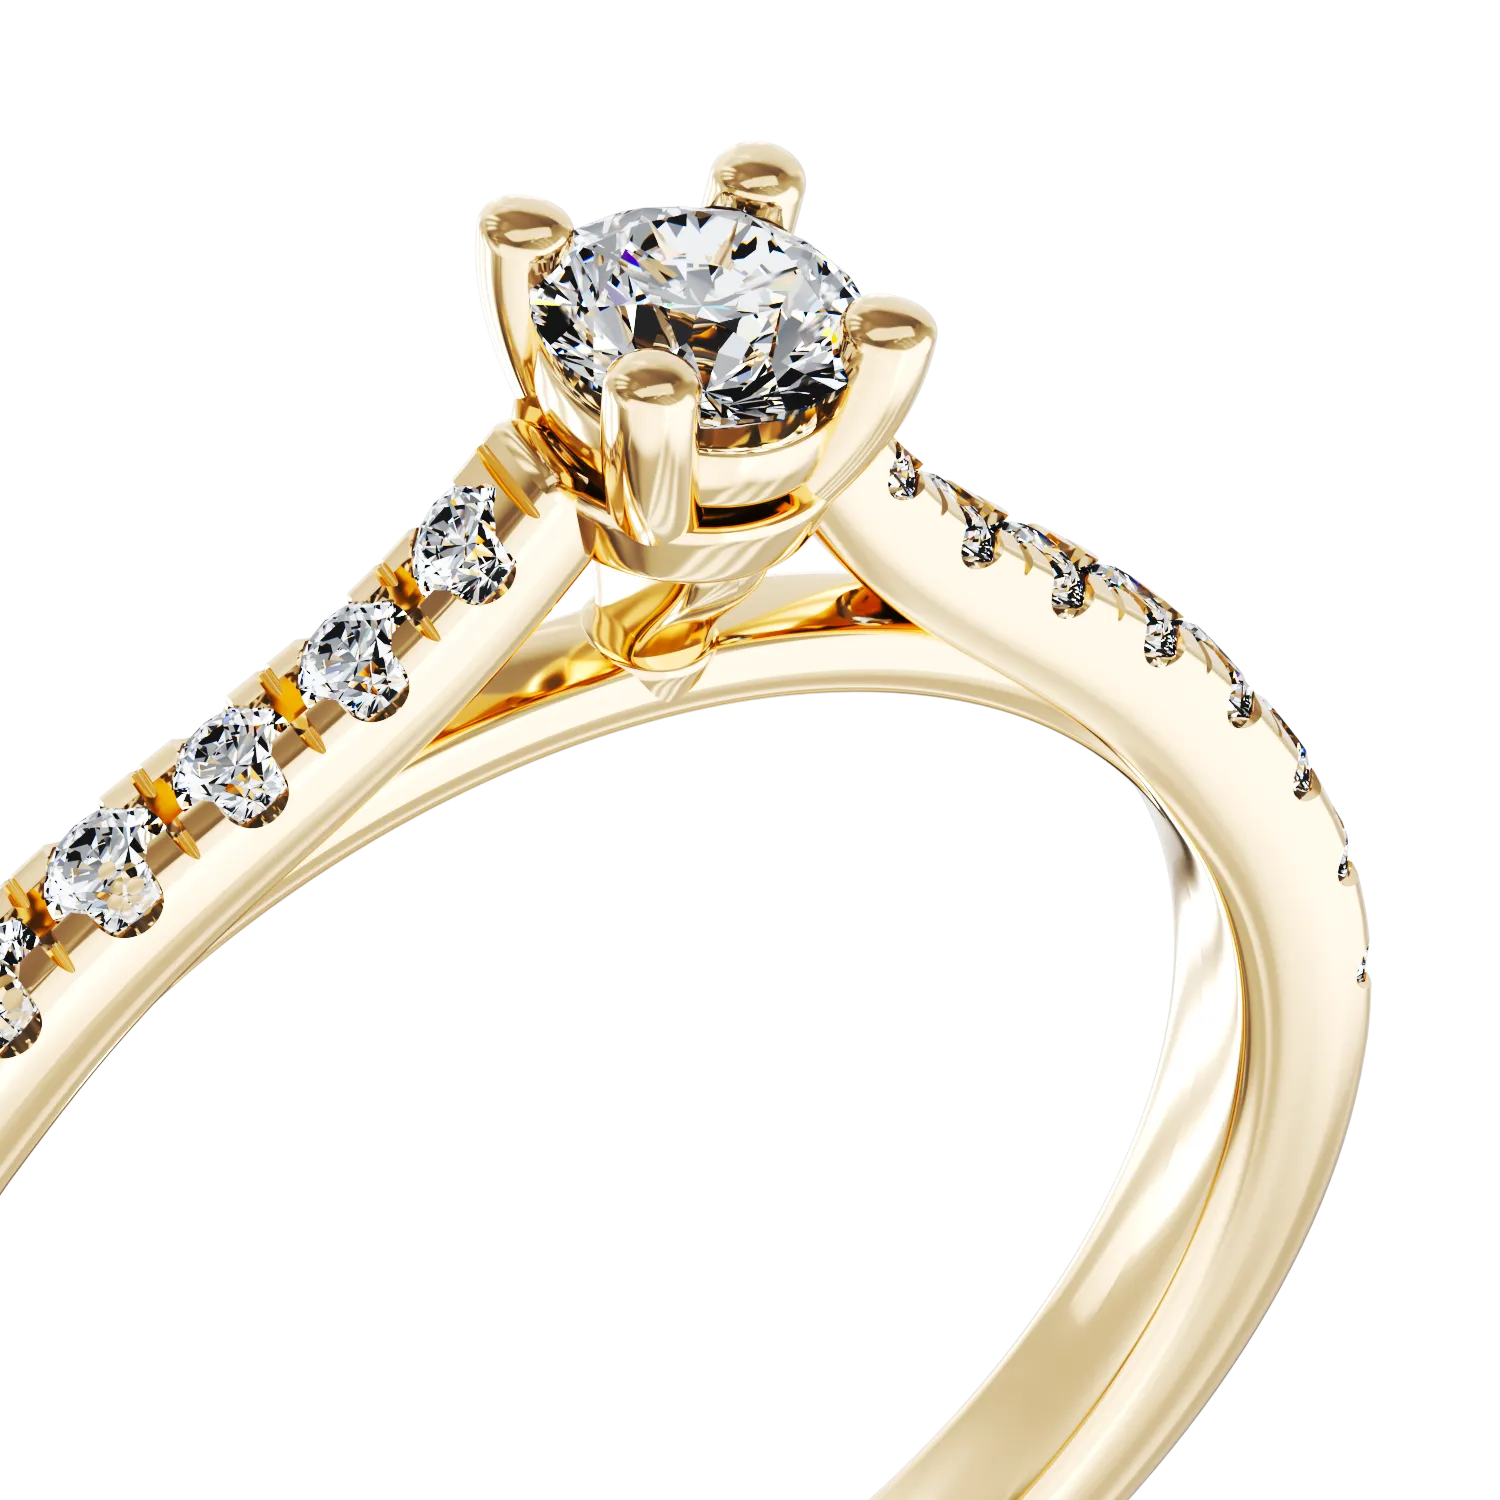 Eljegyzési gyűrű 18K-os sárga aranyból 0,16ct gyémánttal és 0,17ct gyémántokkal. Gramm: 2,27